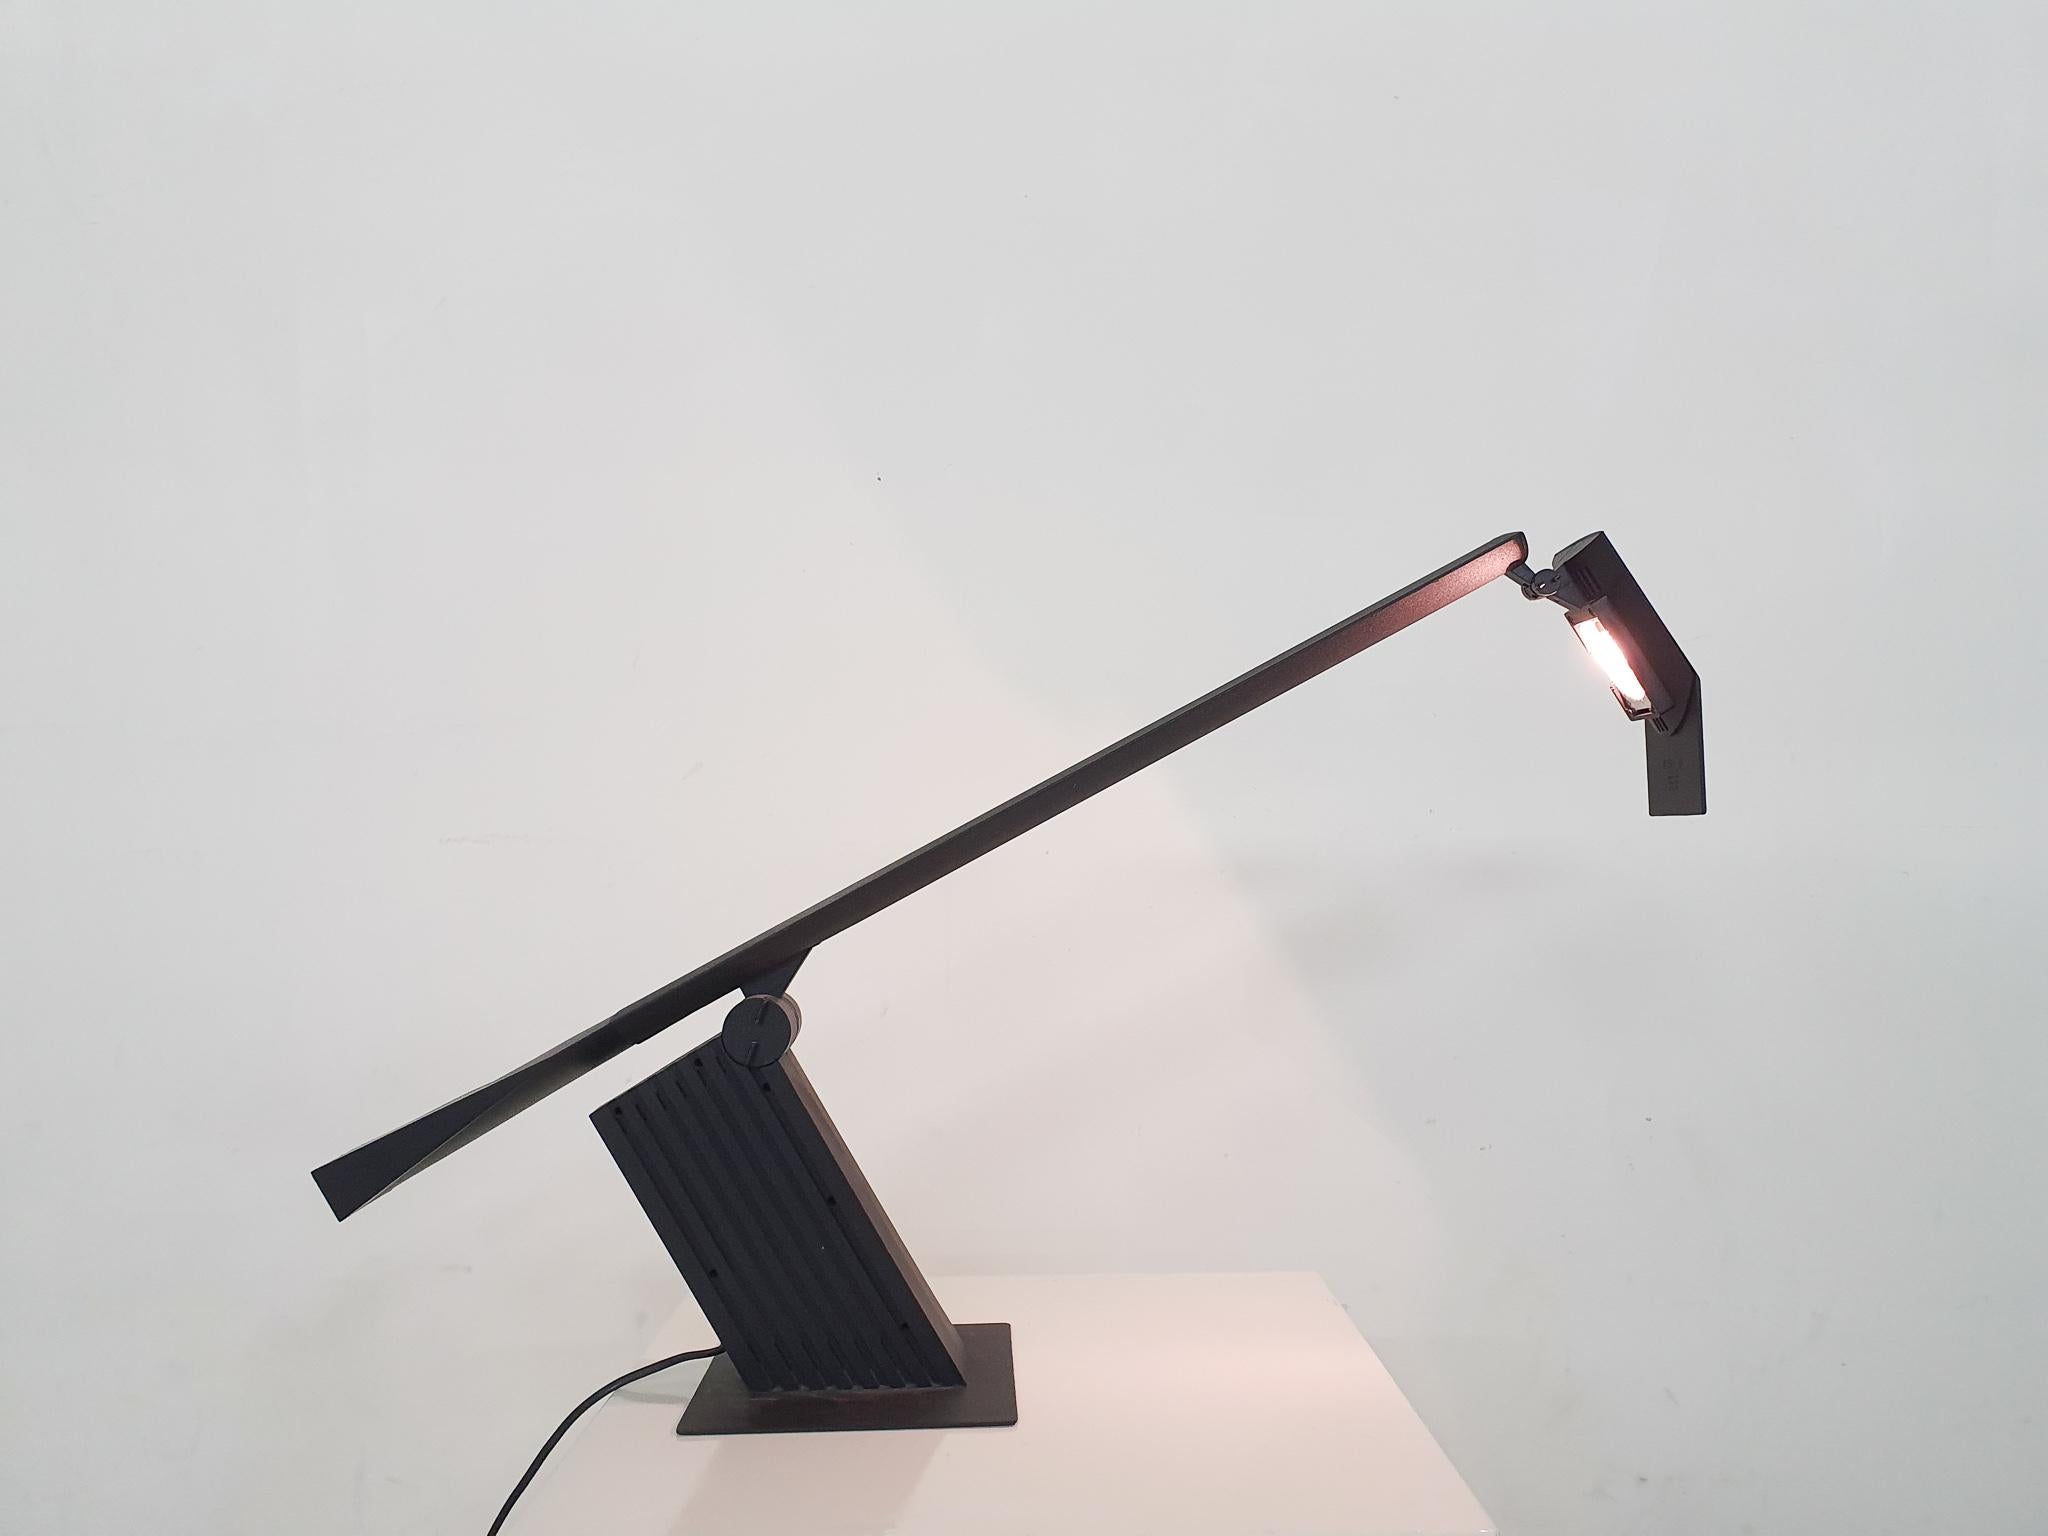 Lampe de bureau réglable en plastique noir et métal, conçue par Hans von Klier pour Bilumen.
La lumière utilise une lampe halogène. Il y a un éclat du plastique sur la tête, à côté de la lampe halogène.